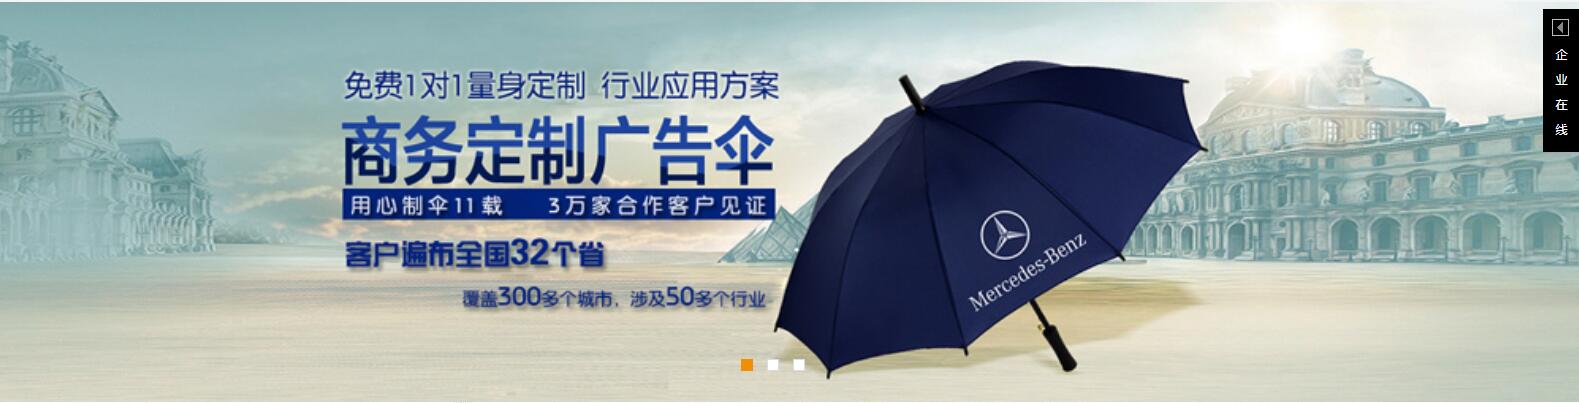 广东太阳伞厂定做广东广告太阳伞